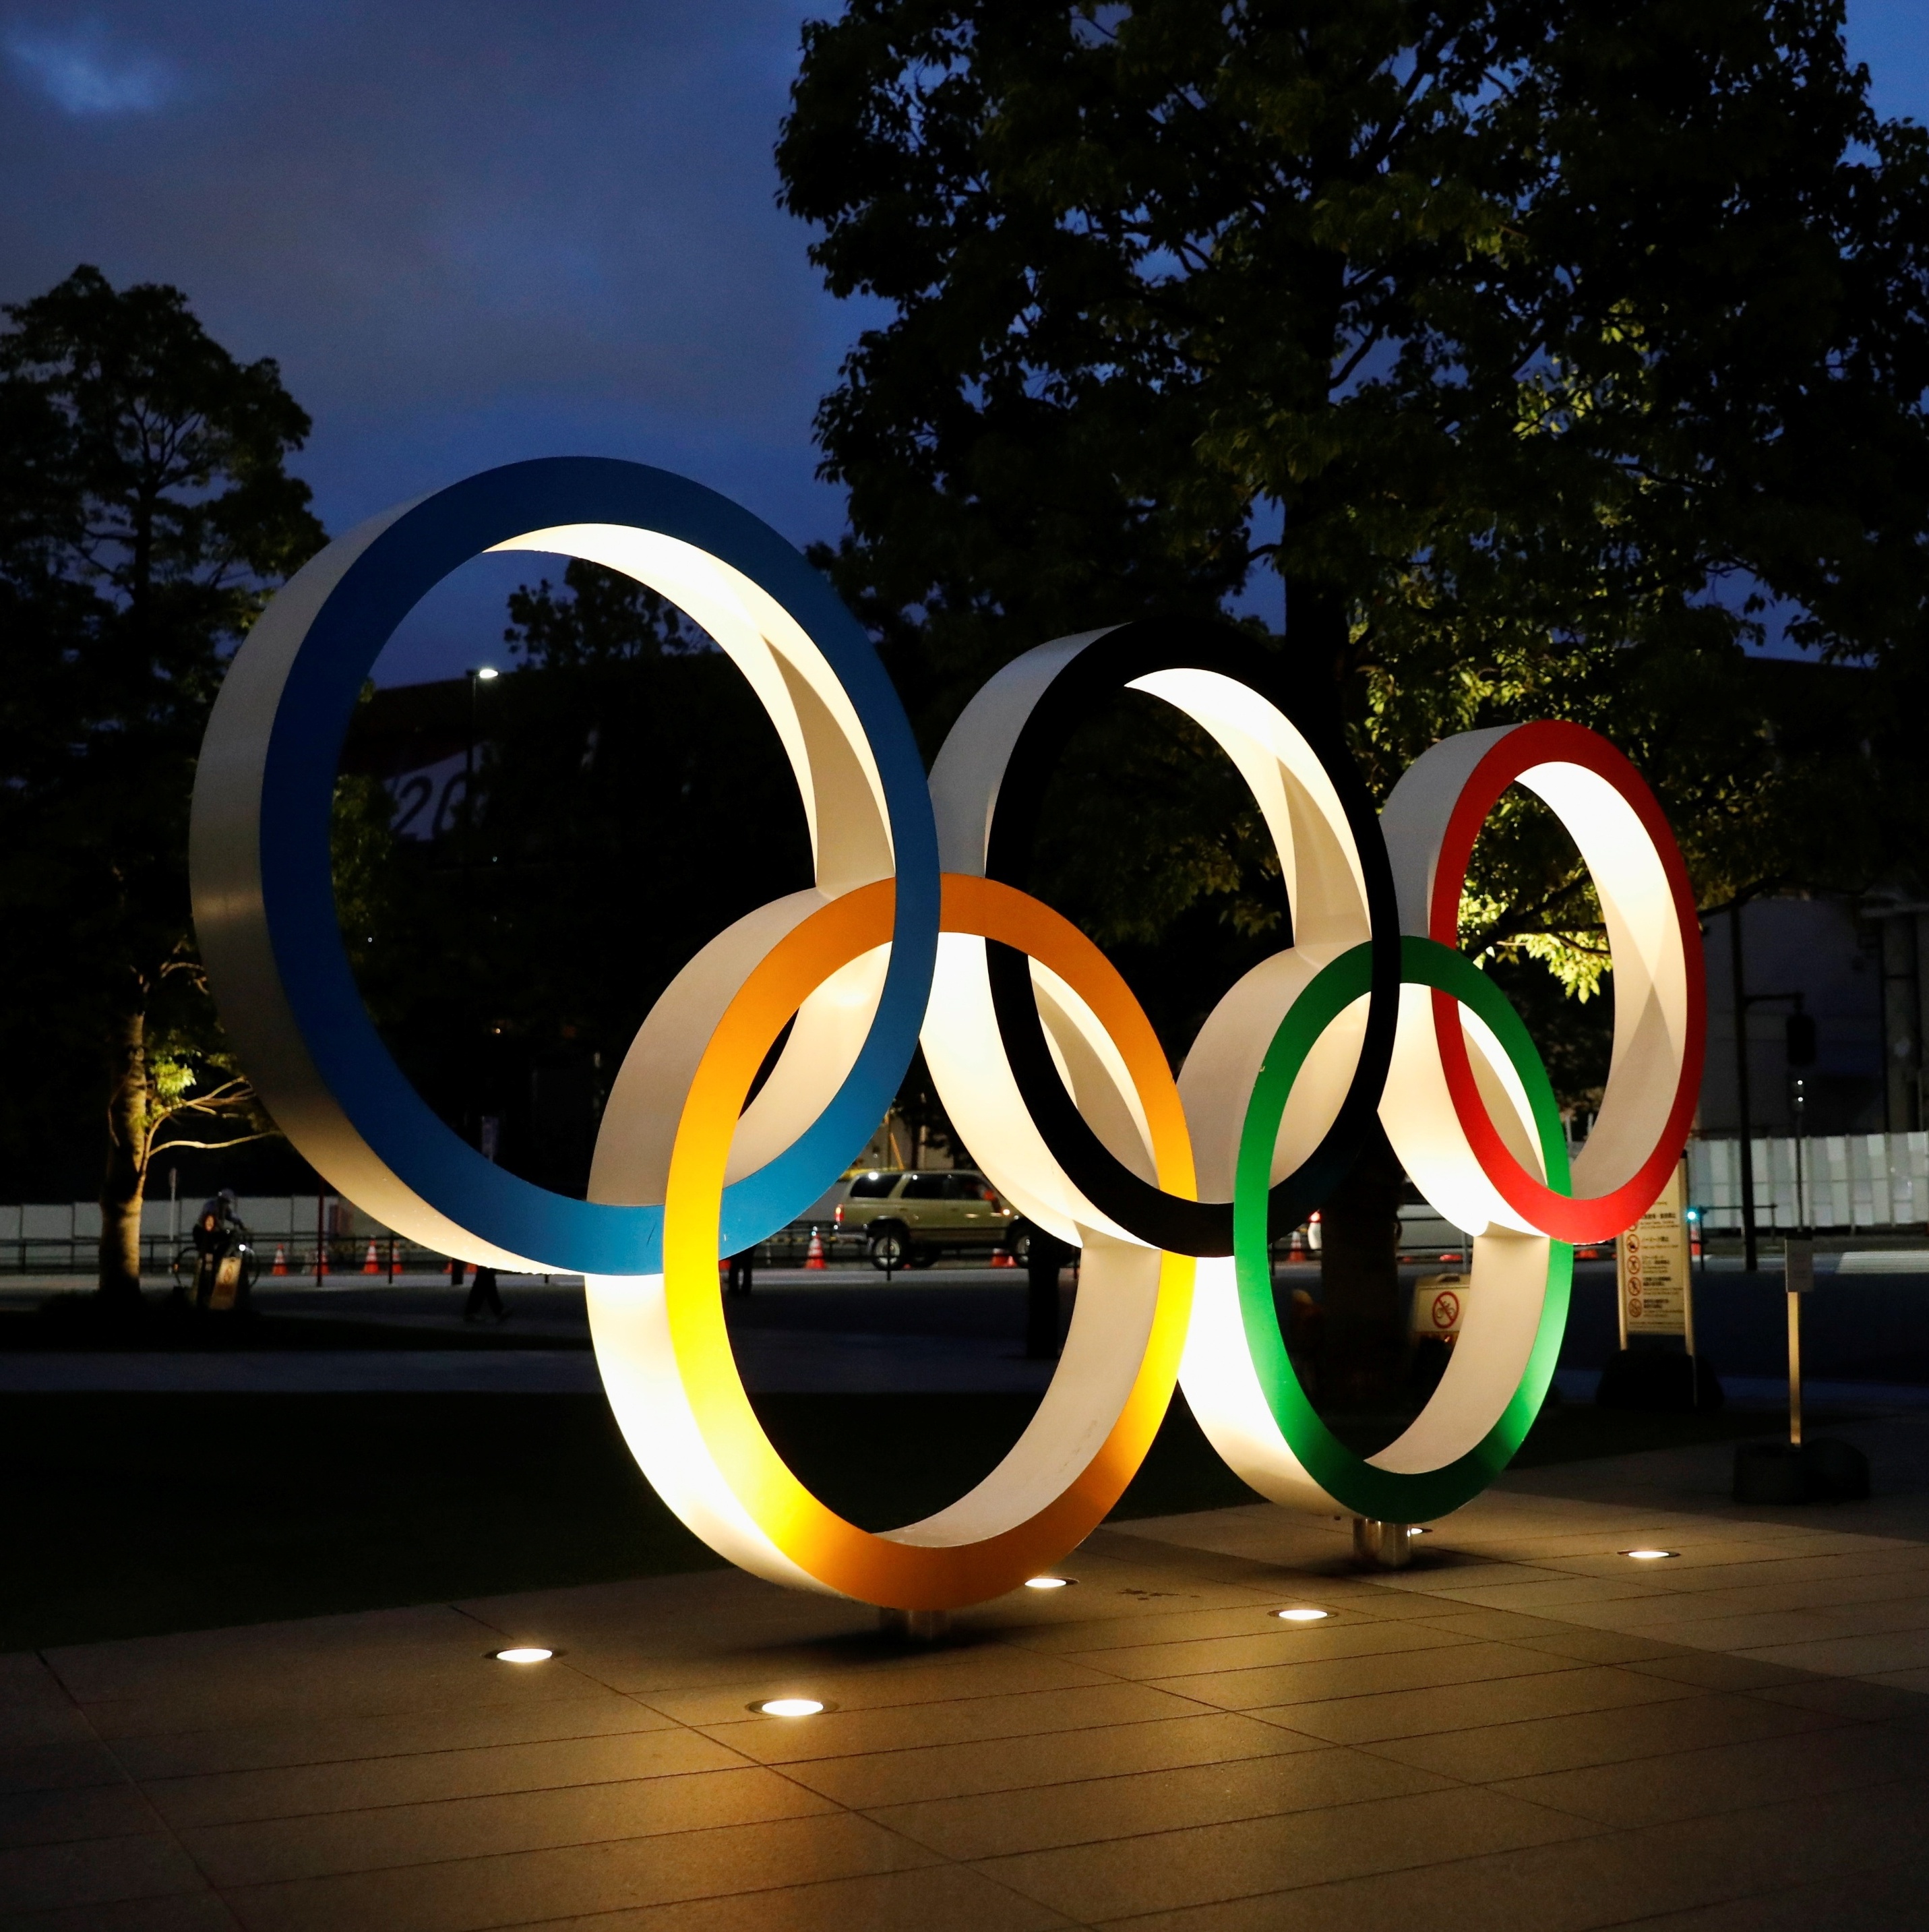 For You - Jogos Olímpicos de Verão de 2020 (第三十二回オリンピック競技大会 (Dai  Sanjūni-kai Orinpikku Kyōgi Taikai), conhecidos oficialmente como os Jogos  da XXXII Olimpíada, mais comumente Tóquio 2020, será um evento  multiesportivo realizado